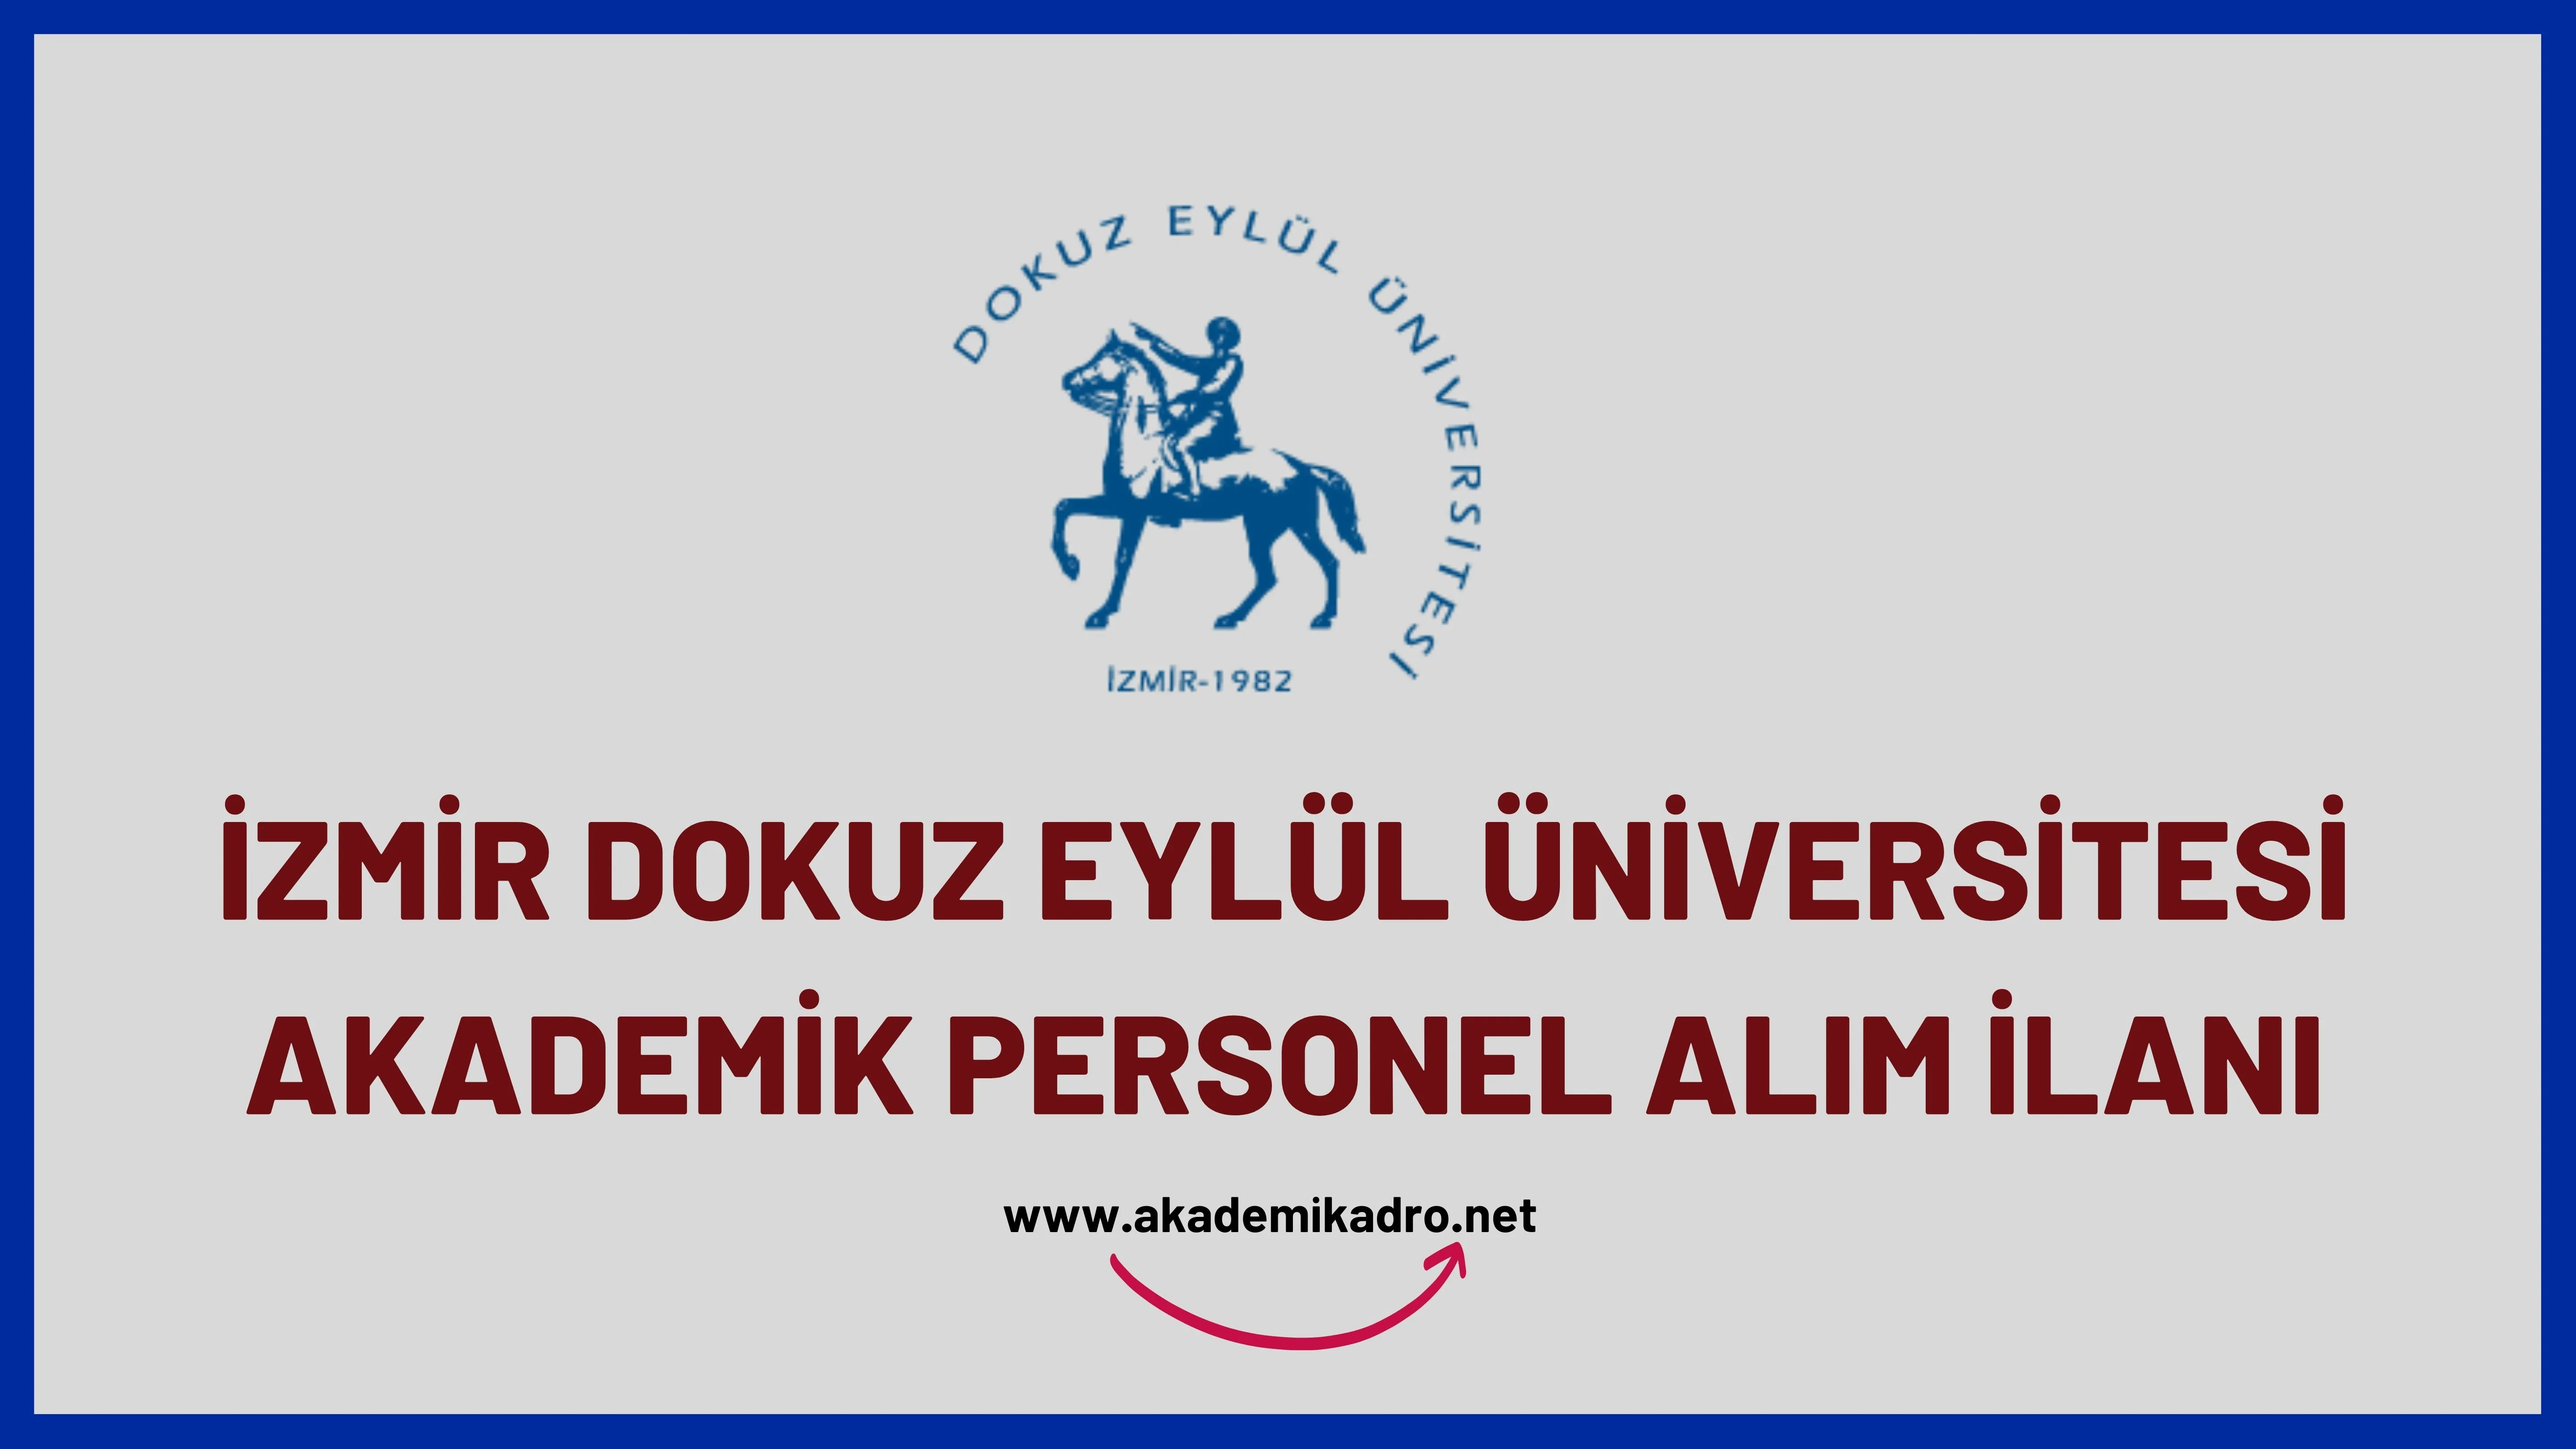 Dokuz Eylül Üniversitesi birçok alandan 46 Akademik personel alacak. Son başvuru tarihi 03 Temmuz 2023.